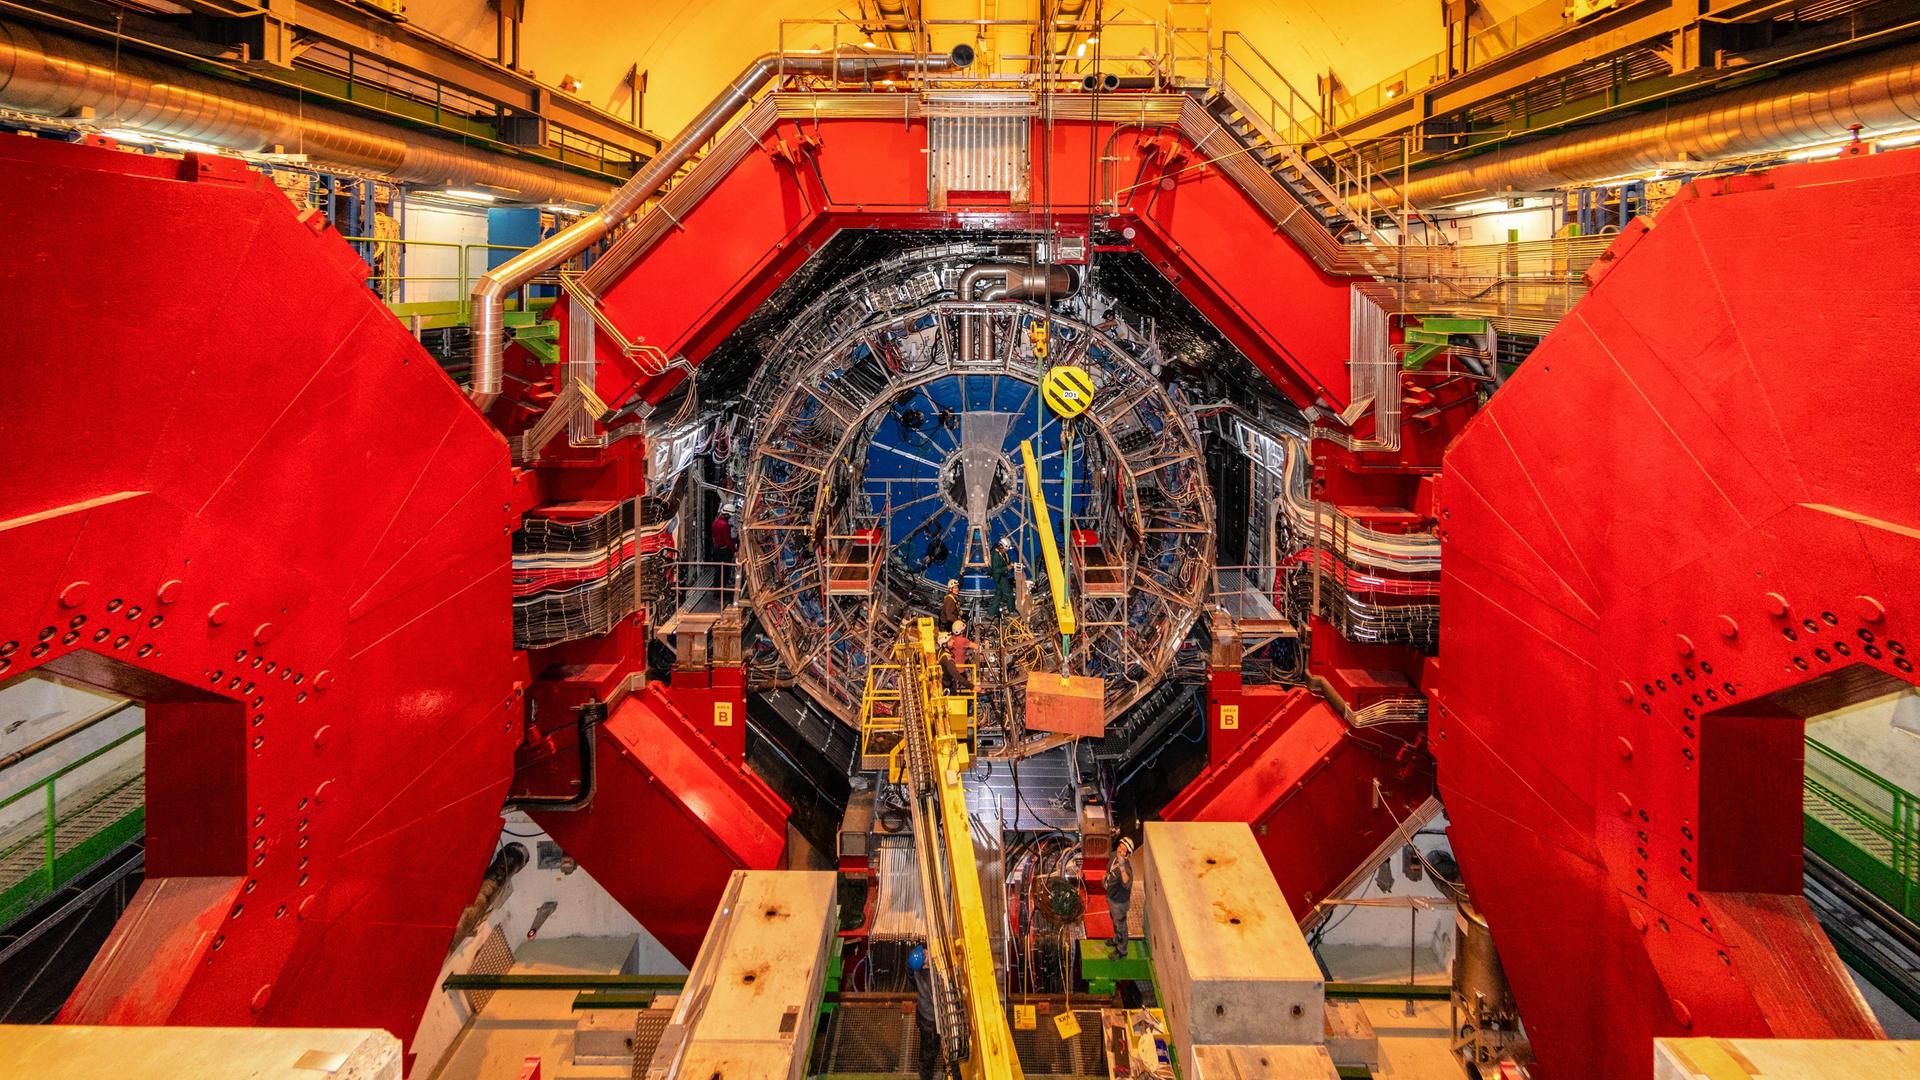 Blick in eine Halle der Europäischen Organisation für Kernforschung. Zu sehen ist ein überdimensional großer Schwerionendetektor auf dem zwei Personen stehen, die nur circa ein Zehntel so groß sind wie der Detektor an sich.